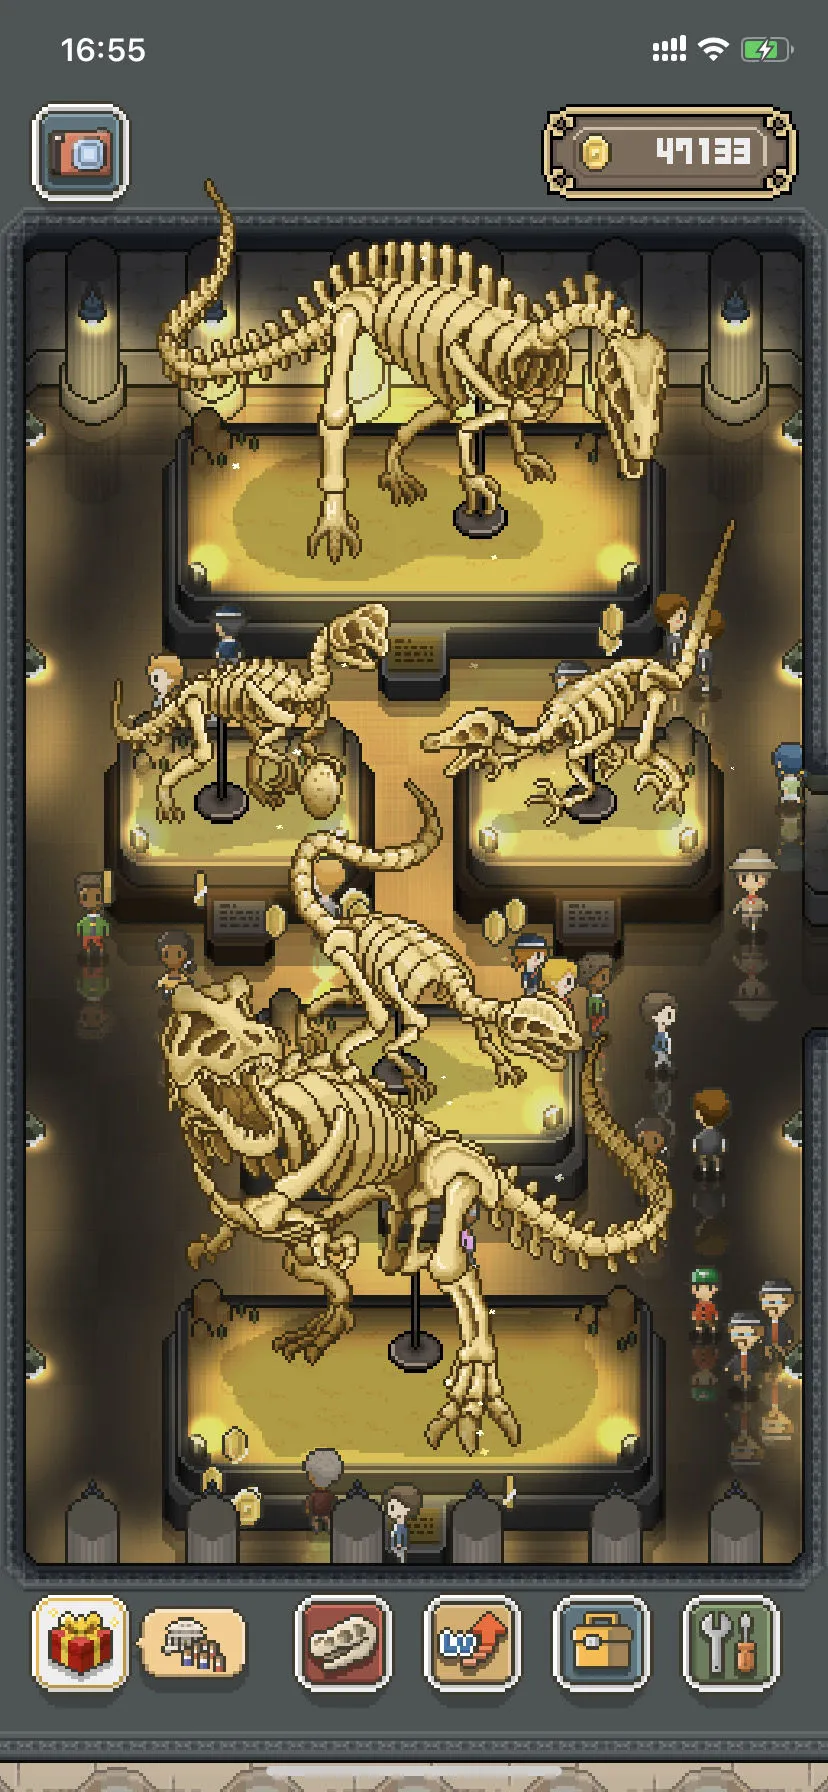 我的化石博物馆兽脚龙图鉴 兽脚龙